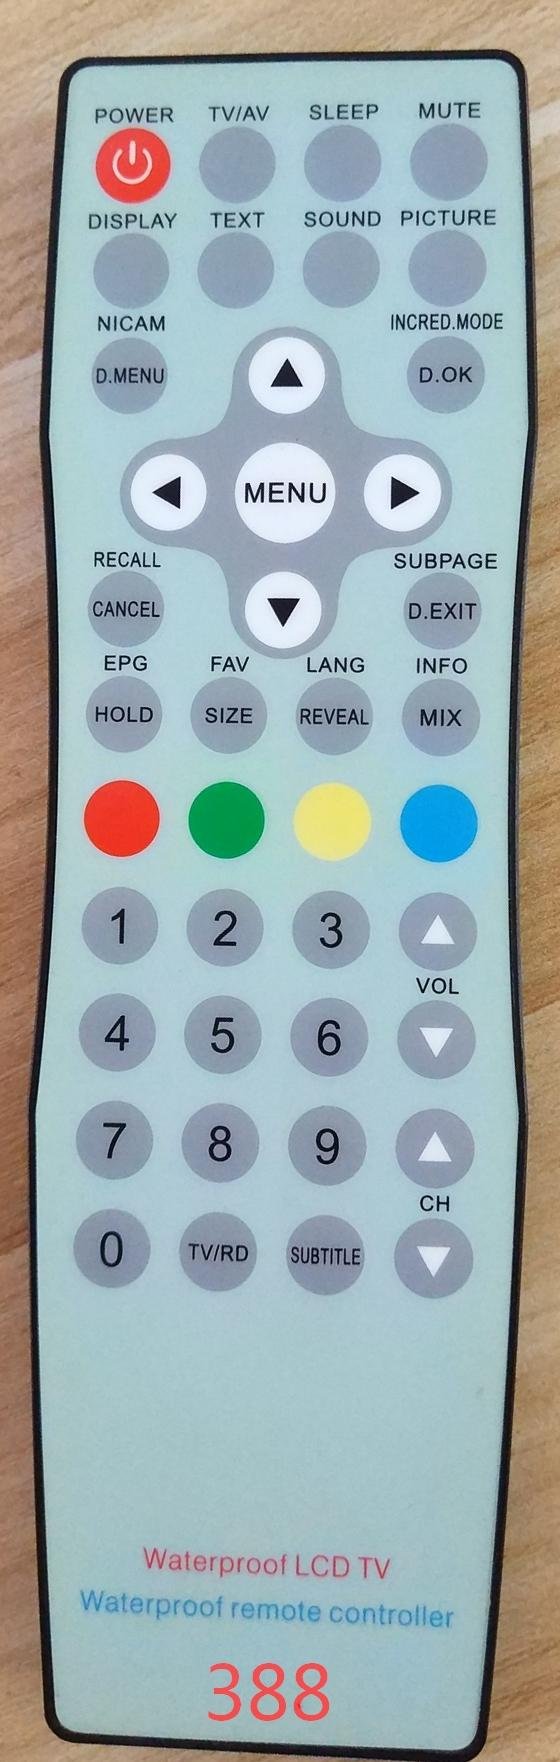 IP67 remote control